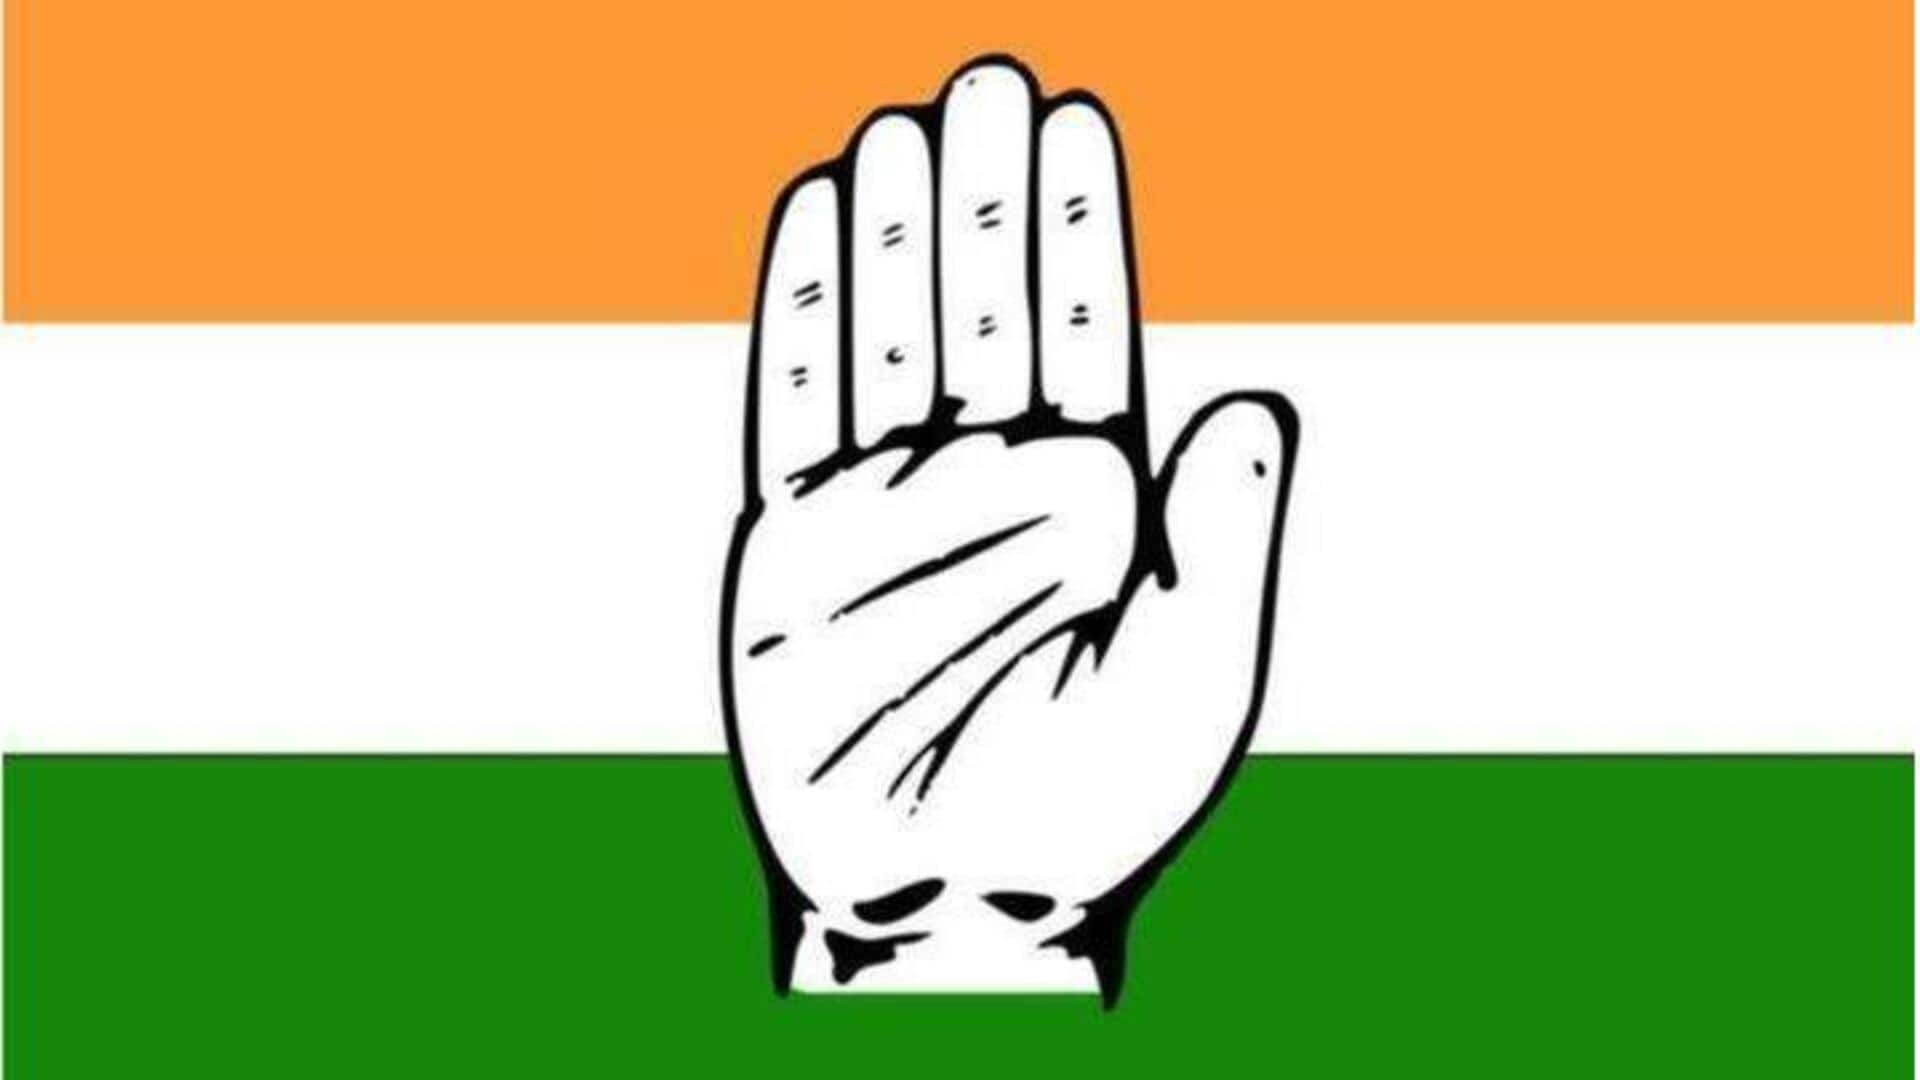 Congress: కాంగ్రెస్‌లో భారీ మార్పులు.. తెలంగాణకు కొత్త ఇన్‌చార్జ్‌.. సచిన్‌కు కీలక బాధ్యతలు 